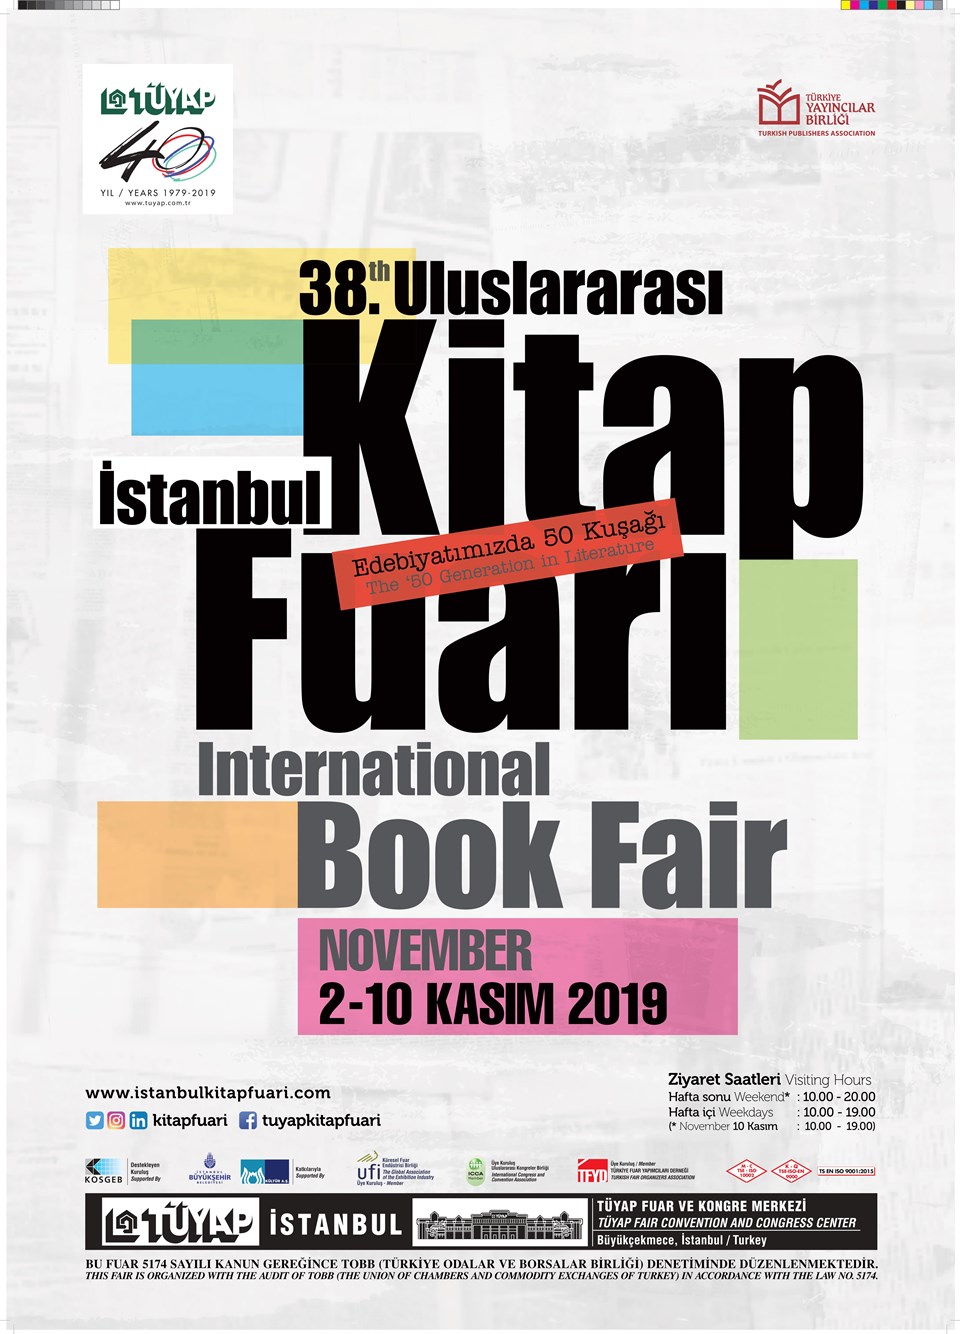 38. Uluslararası İstanbul Kitap Fuarı etkinlik programı açıklandı - 2